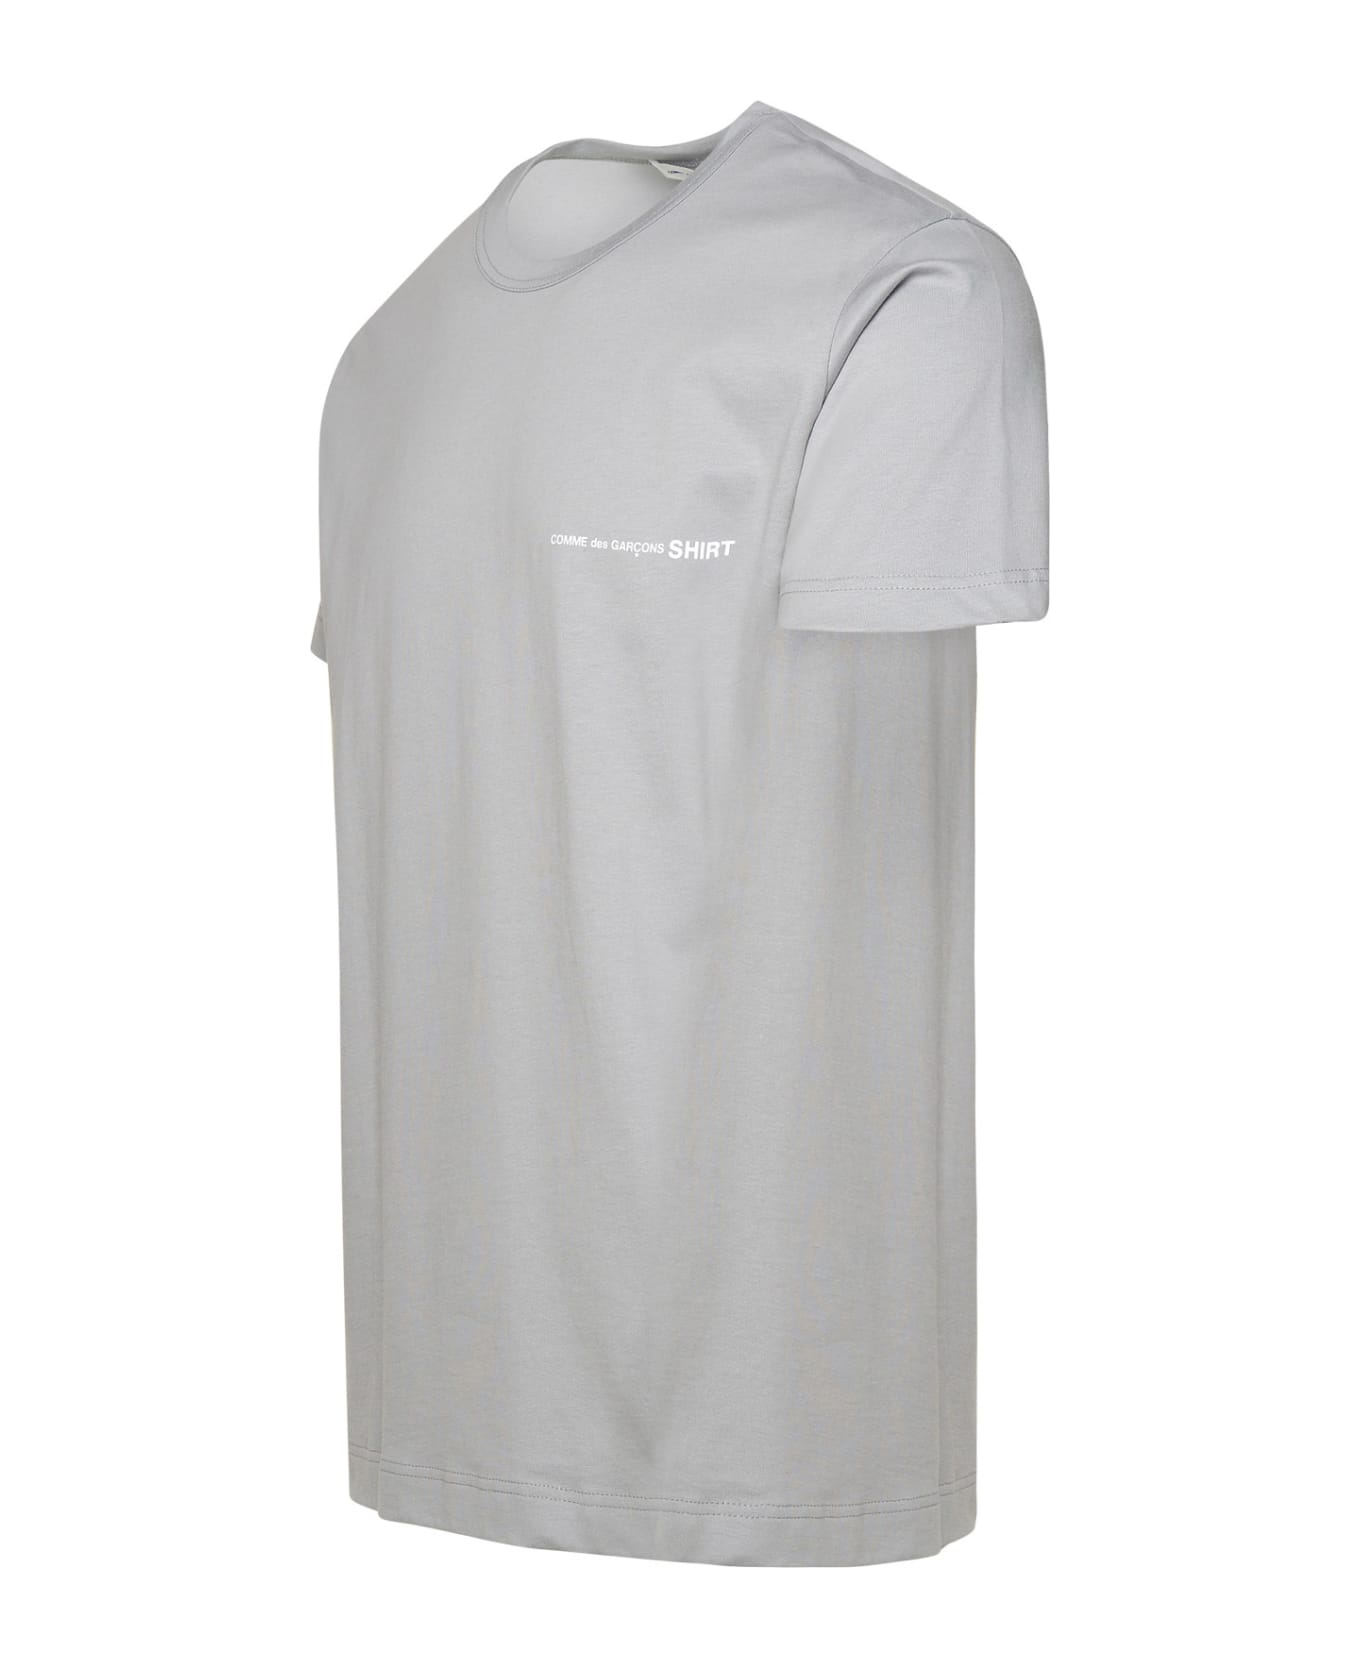 Comme des Garçons Shirt Gray Cotton T-shirt - Grey シャツ